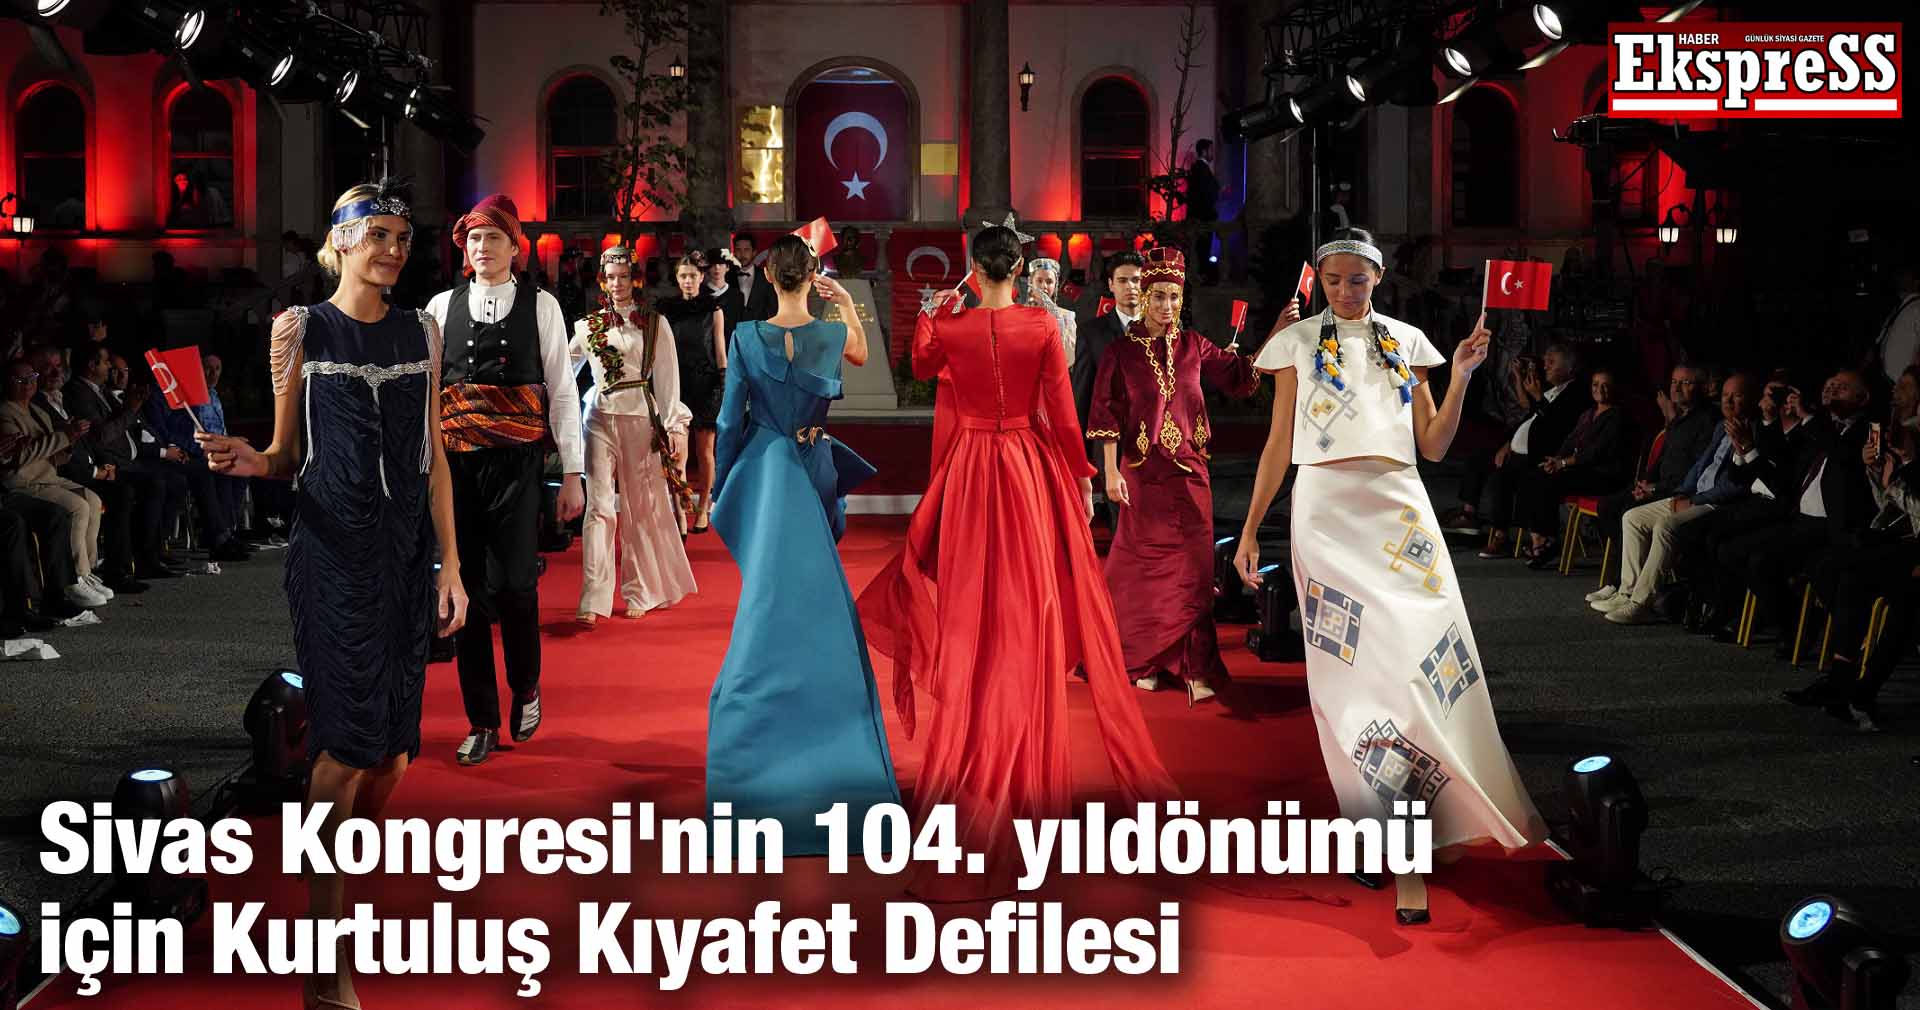 Sivas Kongresi’nin 104. yıldönümü için Kurtuluş Kıyafet Defilesi